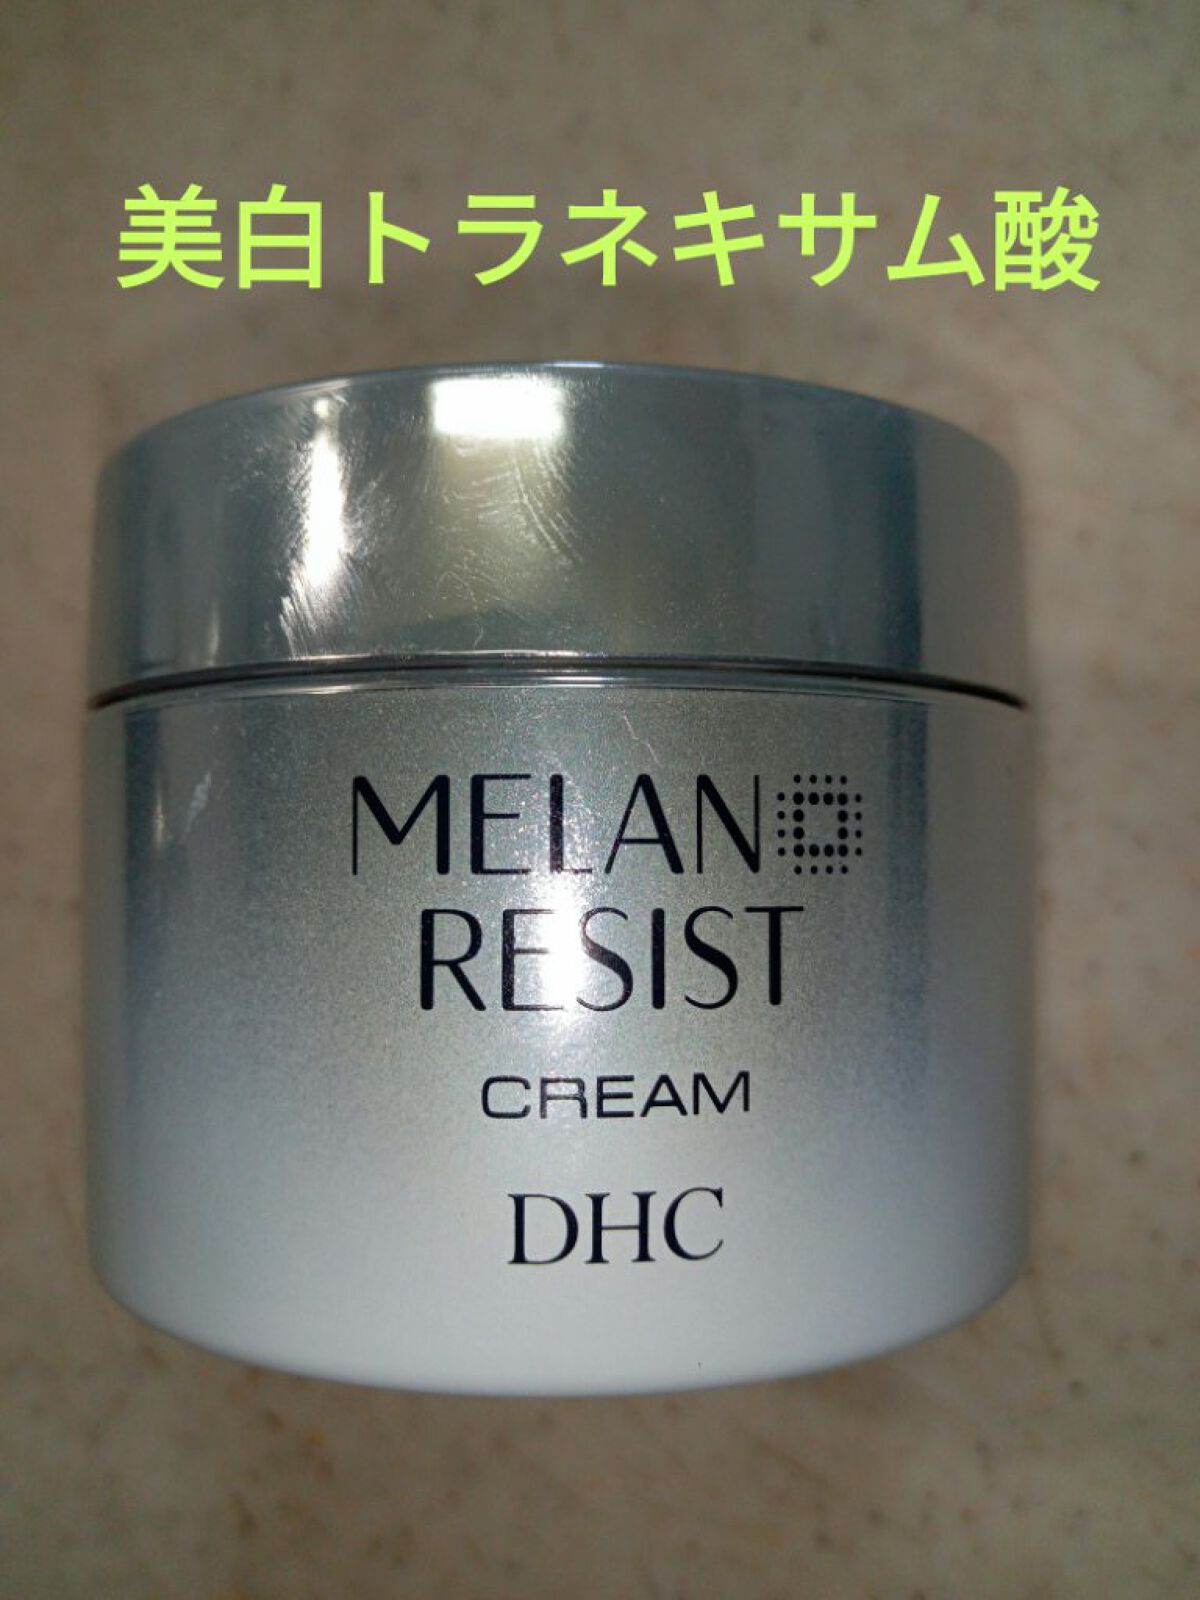 コスメ/美容DHC  薬用メラノレジストローション、レジストセラム、レジストクリーム